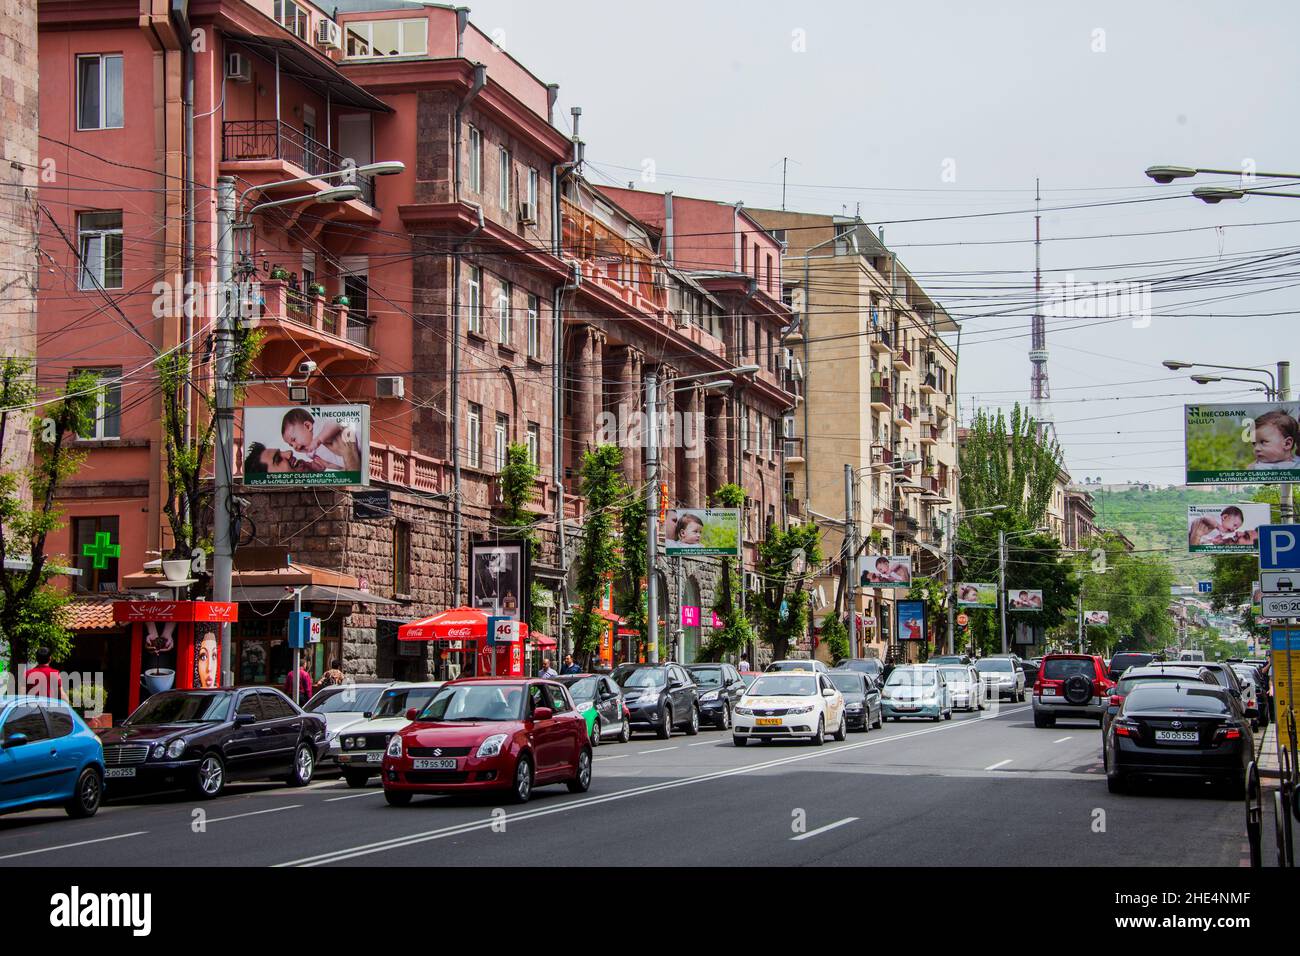 Vue sur les bâtiments, la rue et les voitures contre un ciel nuageux à Erevan, Arménie. Banque D'Images